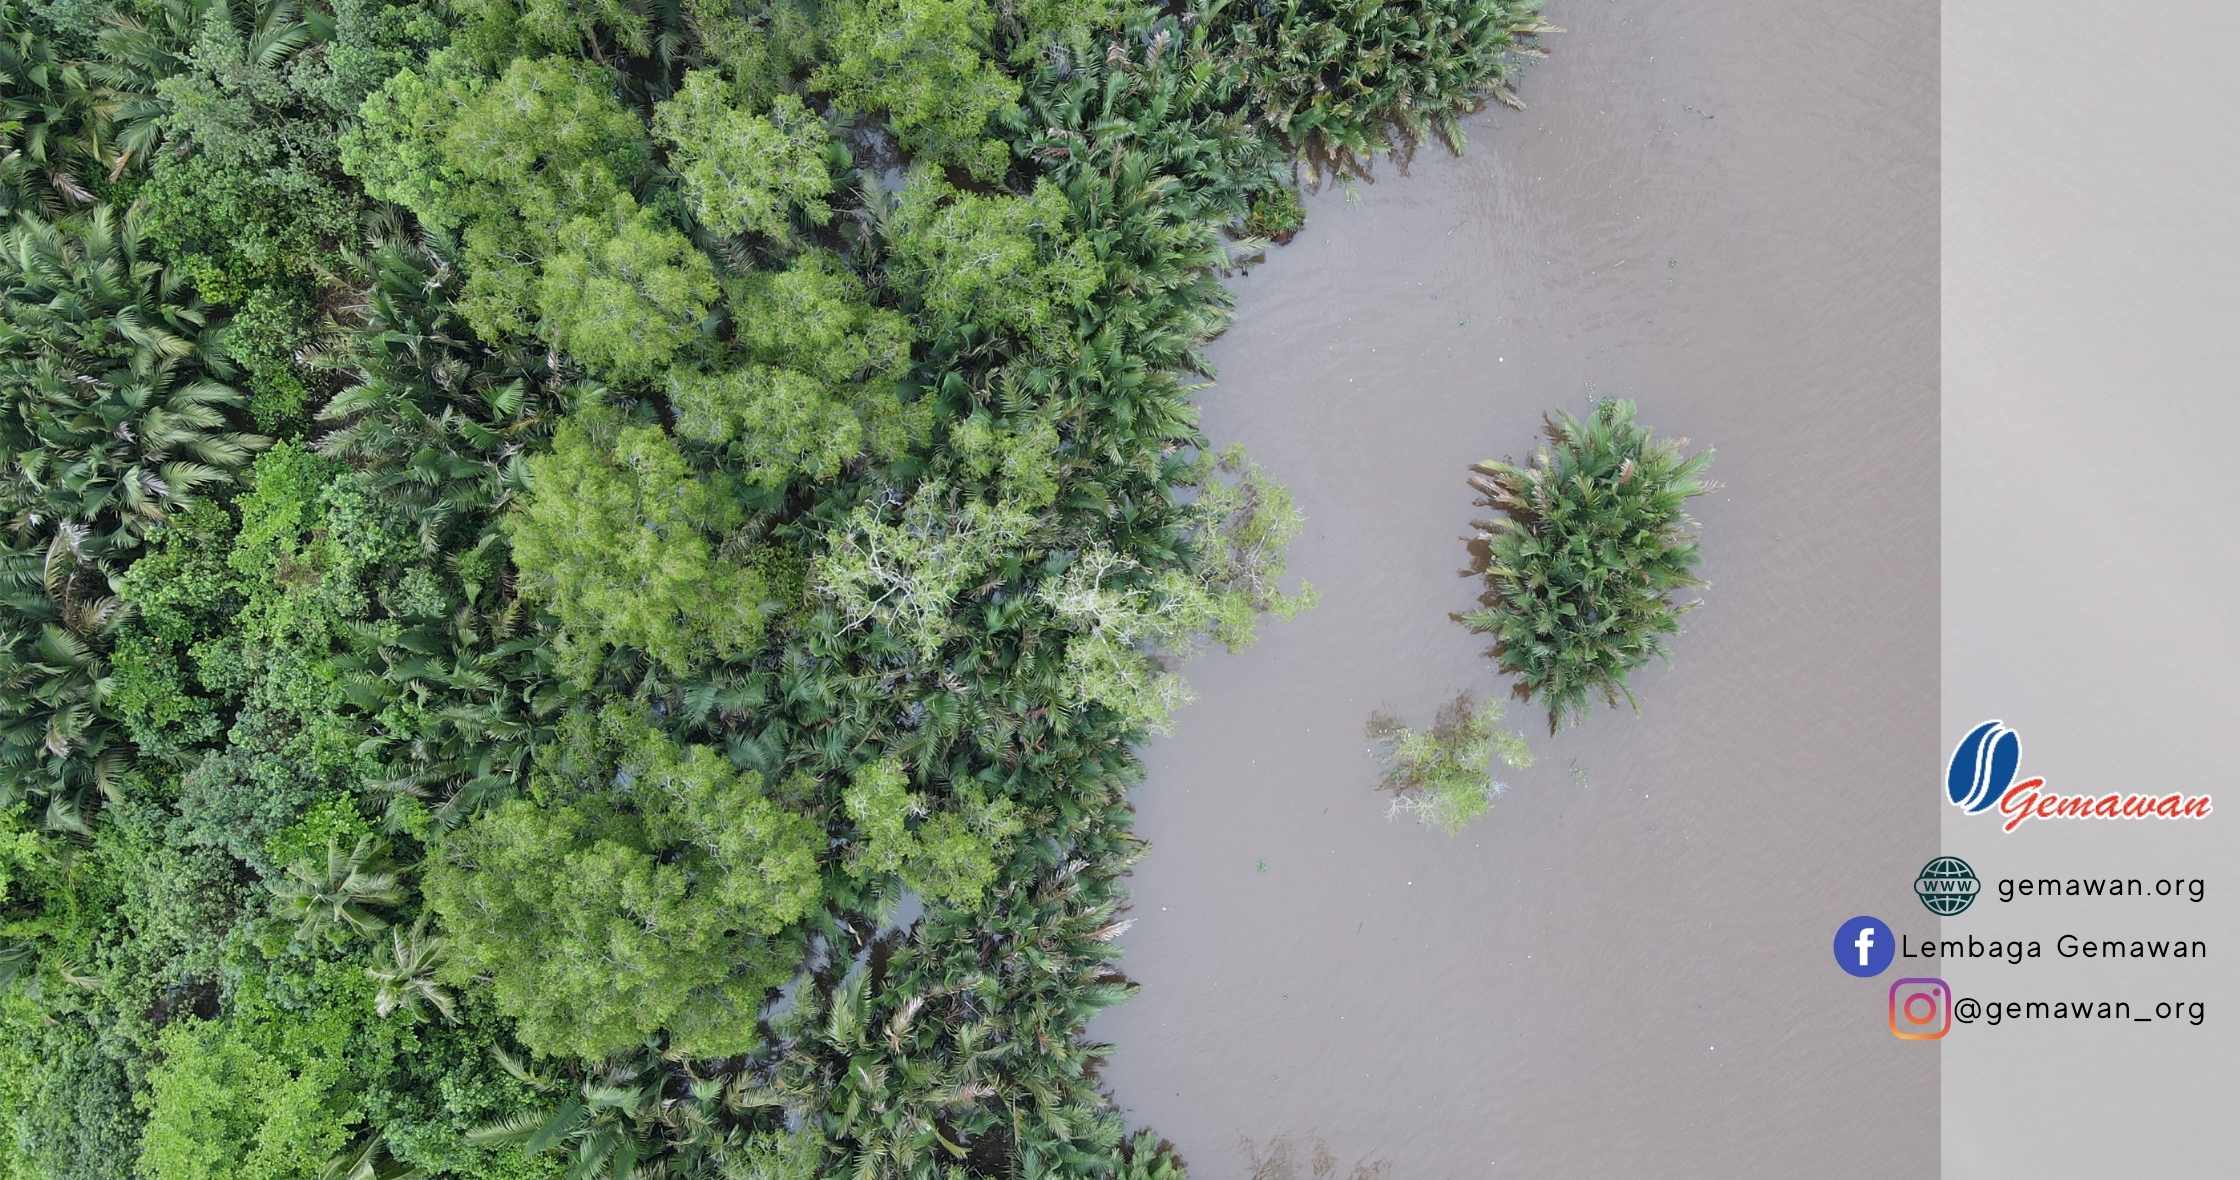 Gemawan Mangrove Action Gunakan Drone di Kalimantan Barat